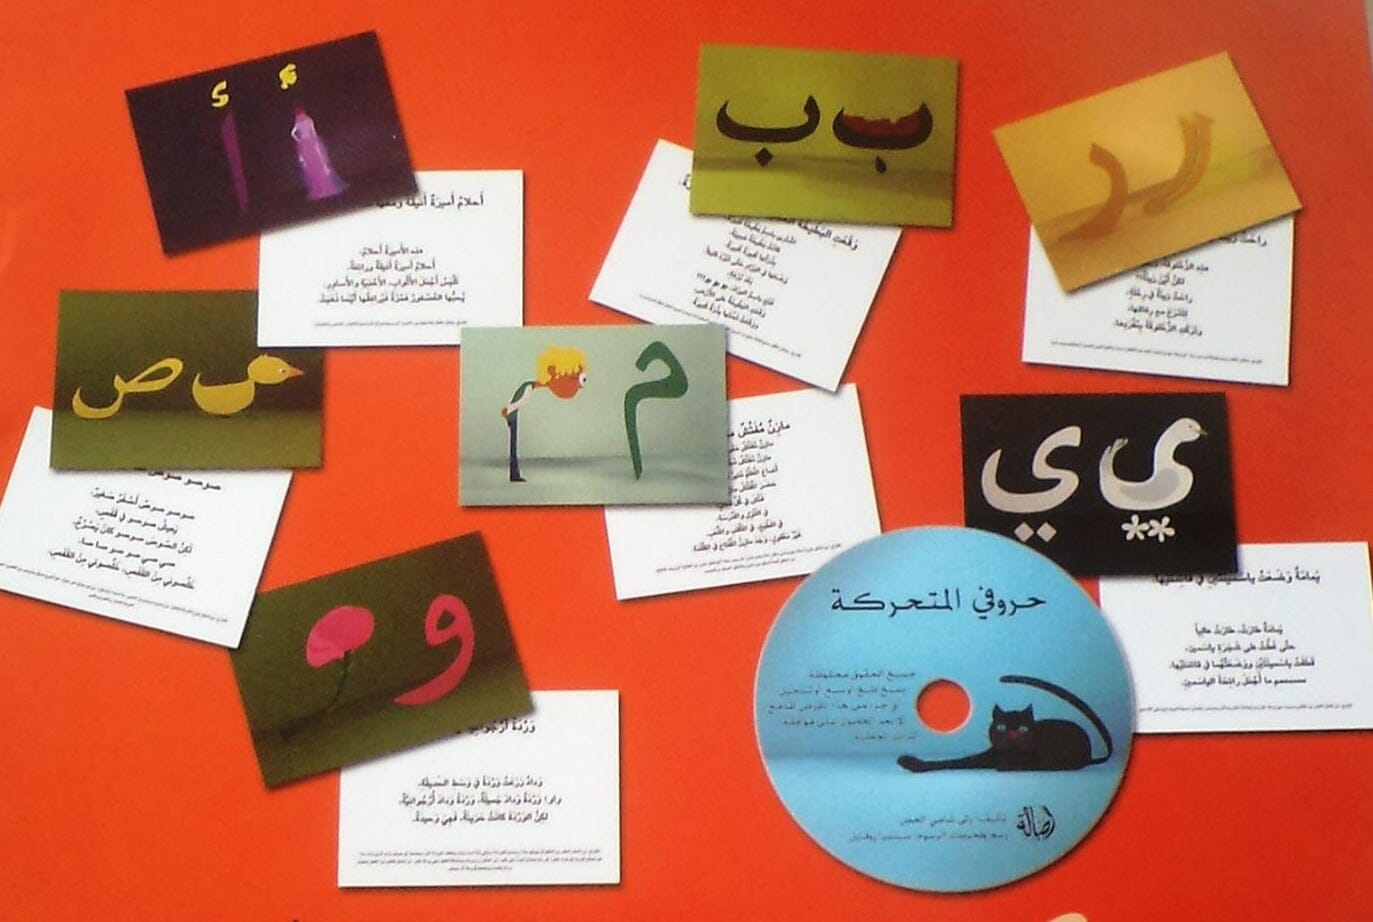 حروفي المتحركة : أسهل طريقة لتعلم الحروف الأبجدية (بطاقة 32+ DVD ) كتب أطفال رلى شامي الحص 